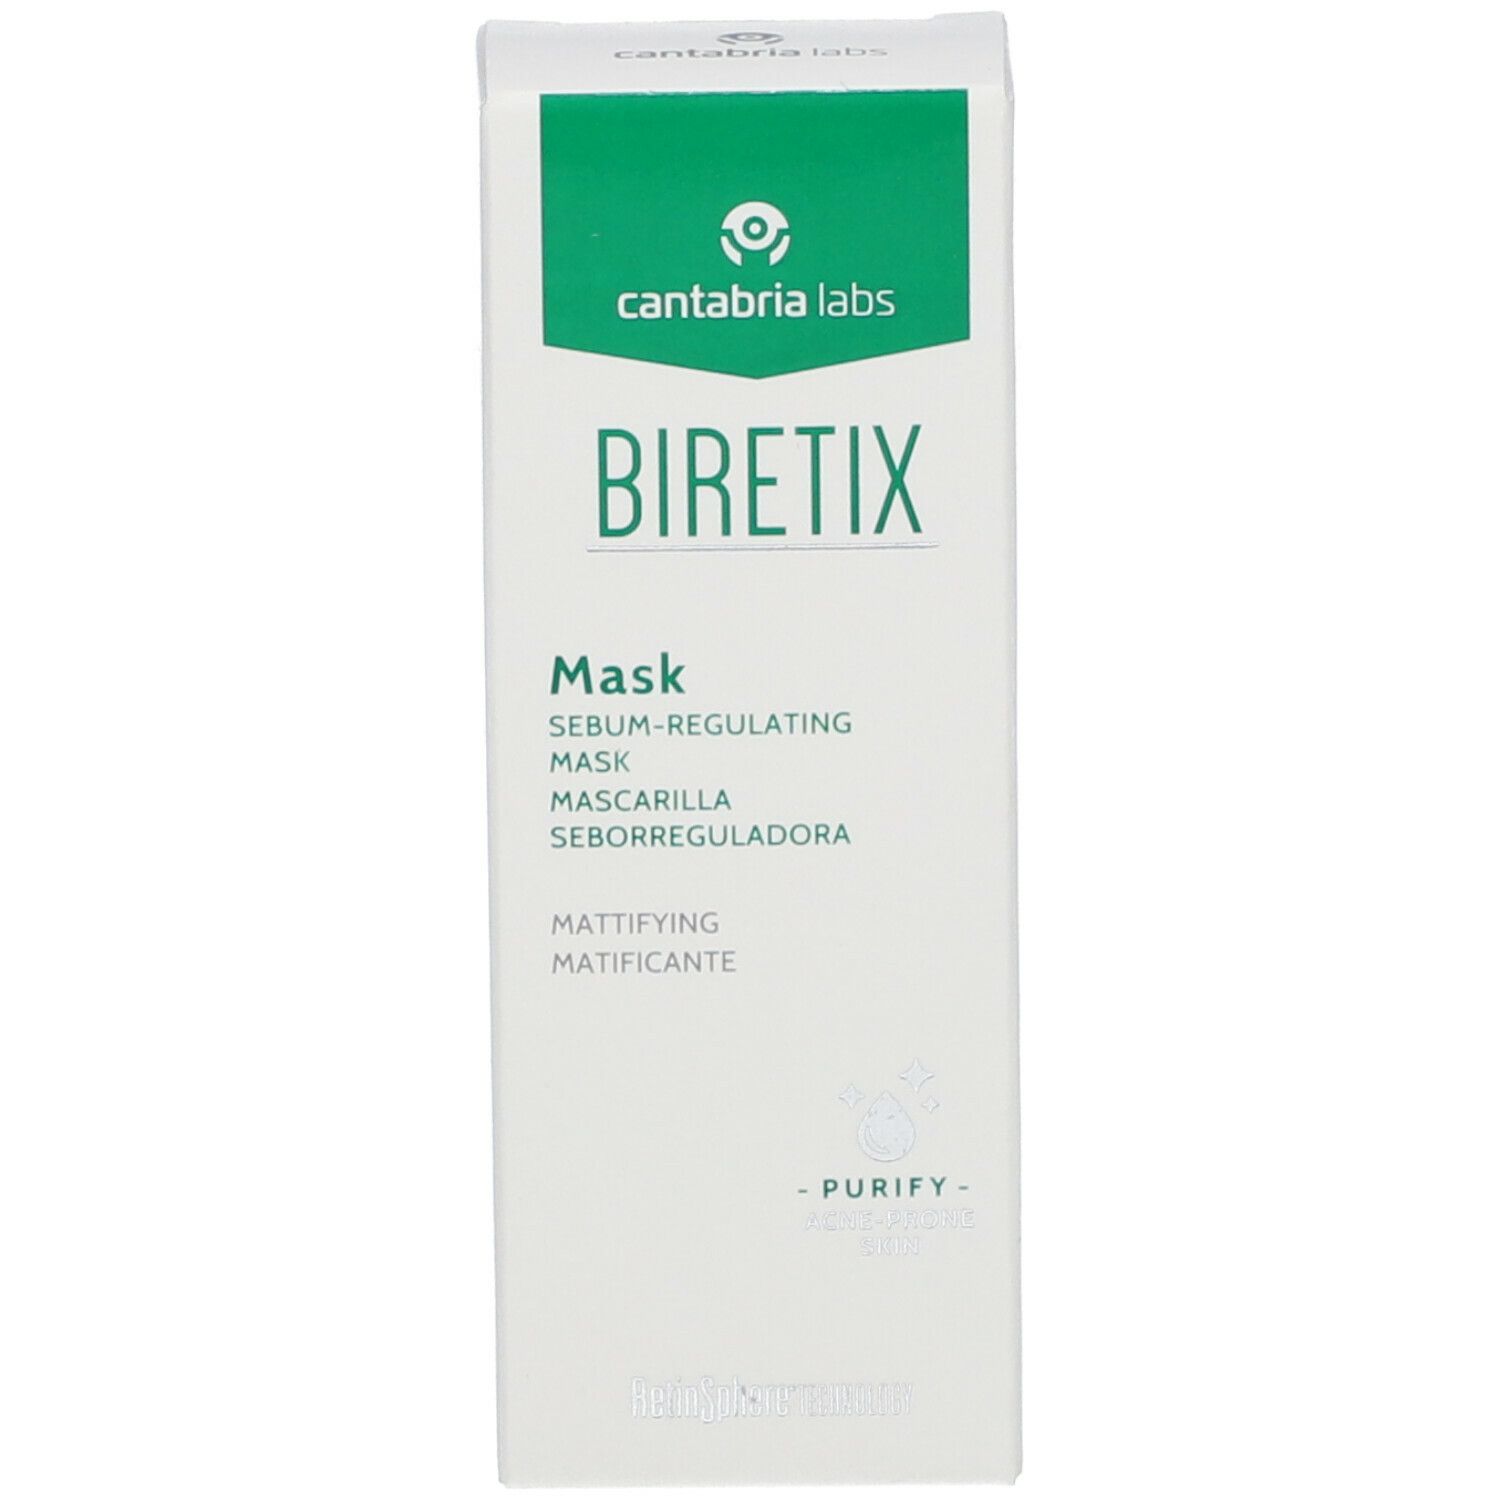 BIRETIX® Mask